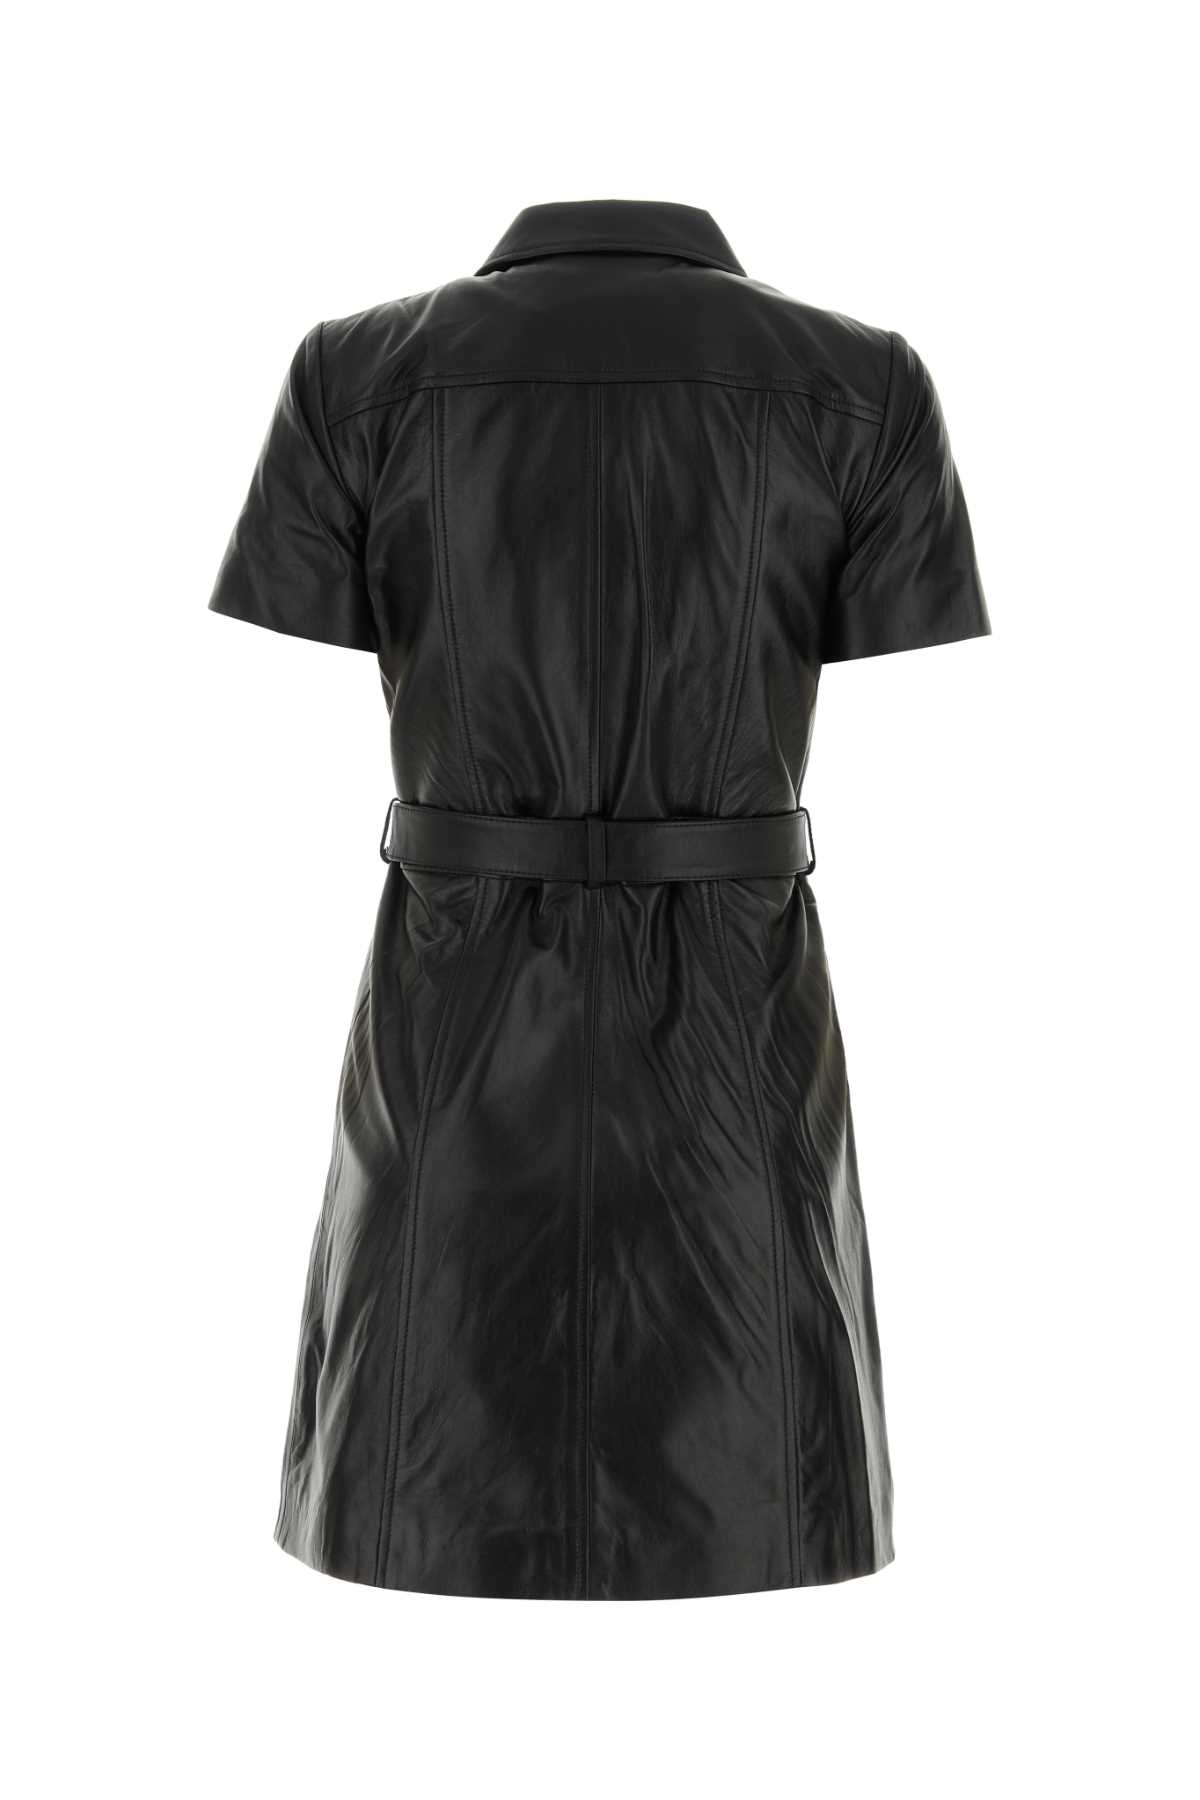 Michael Kors Black Leather Mini Dress